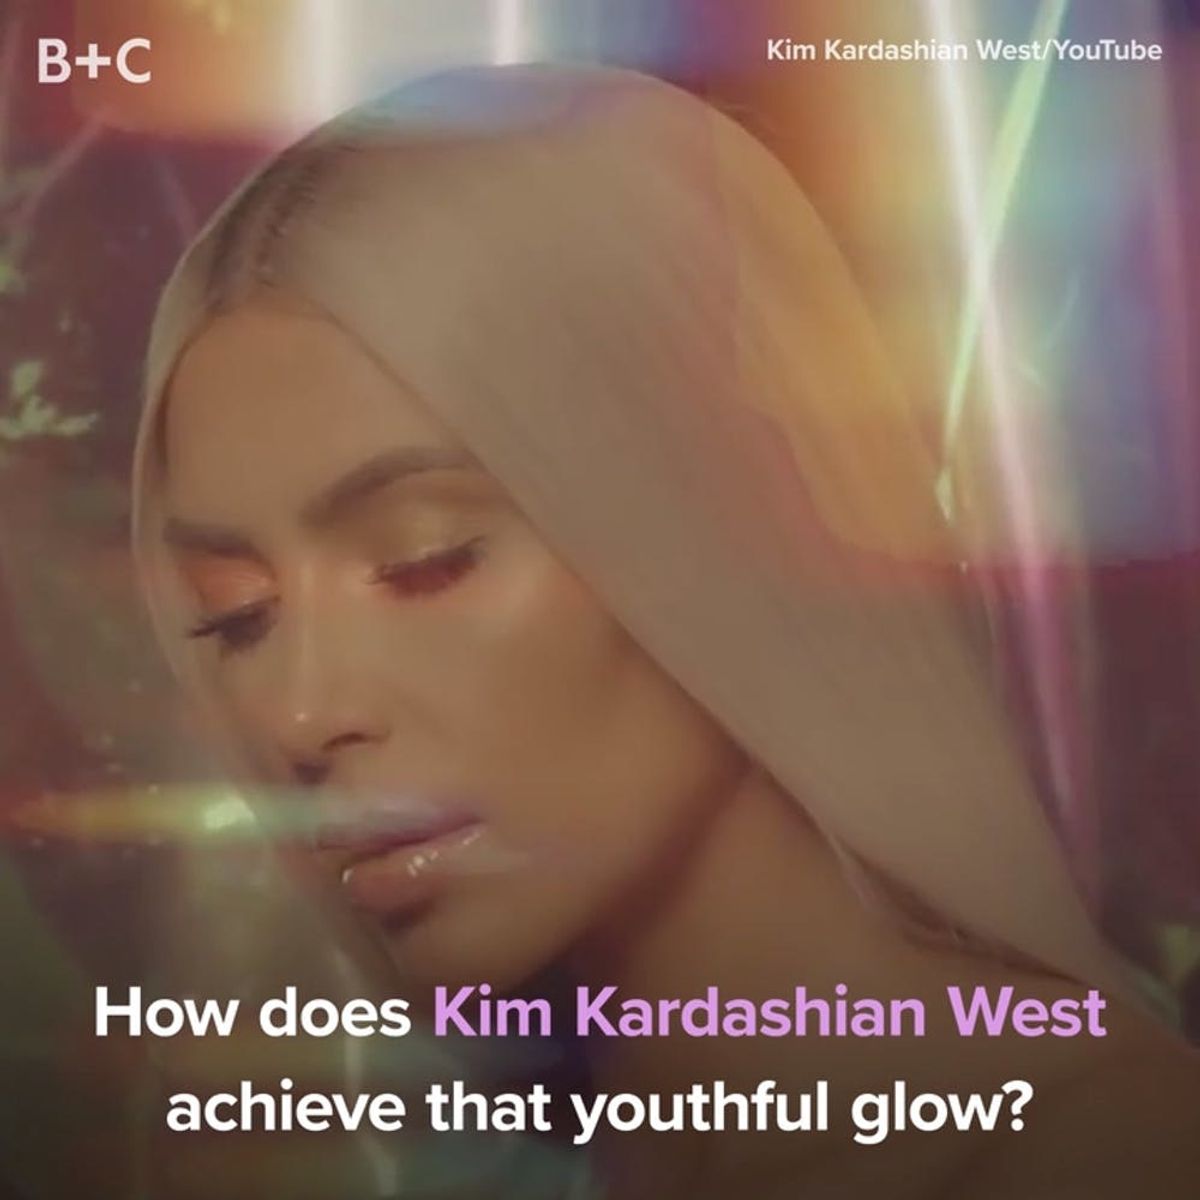 Here’s How Kim Kardashian West Achieves Her Youthful Glow